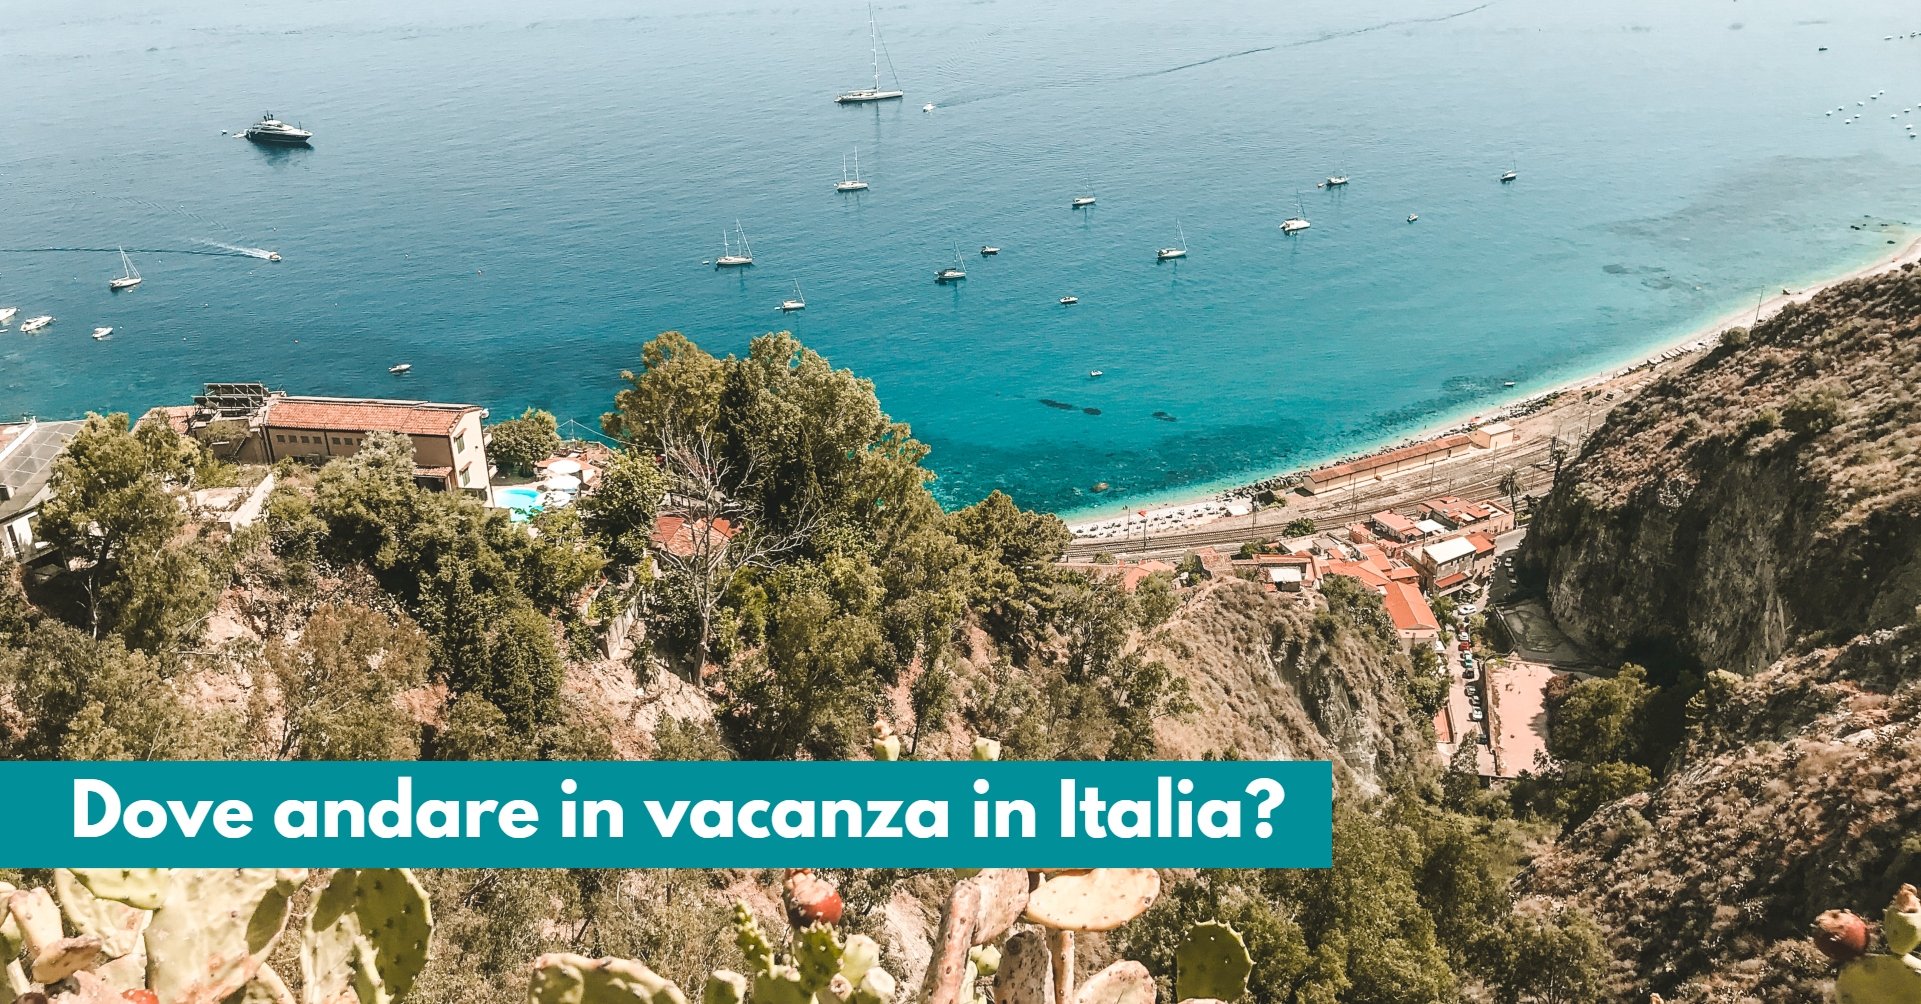 Dove andare in vacanza in Italia? Ecco alcune idee e suggerimenti per tutti i mesi dell’anno